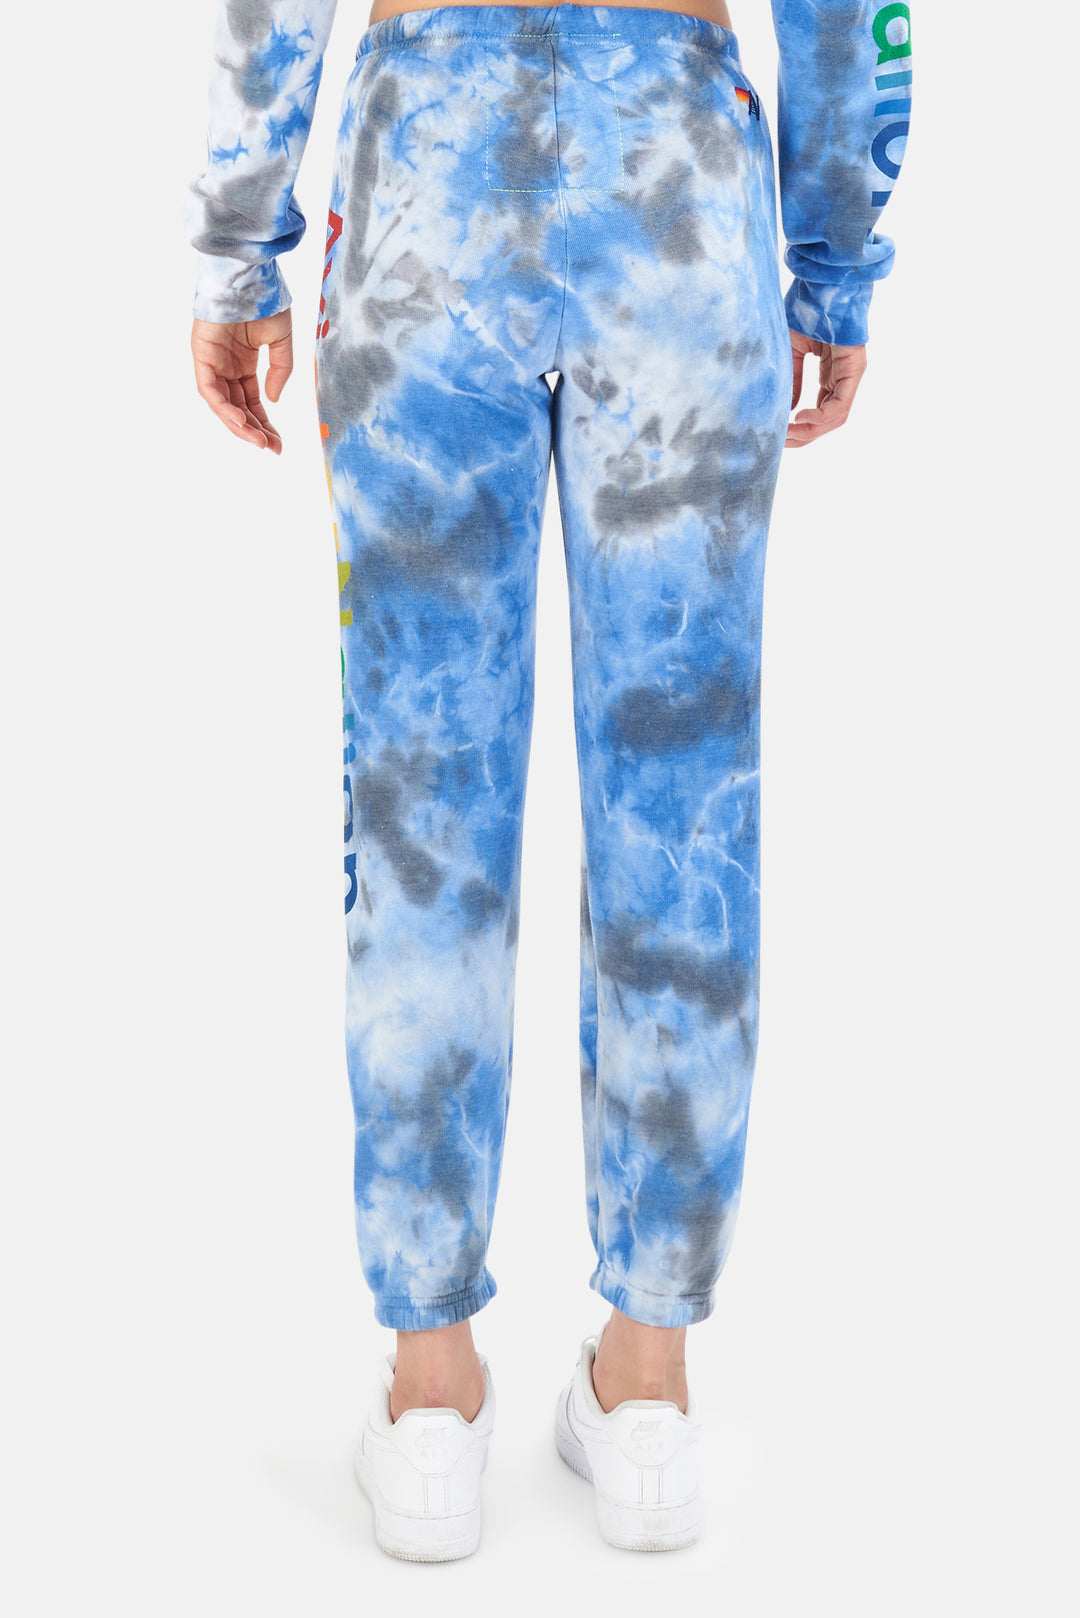 Women's Hamptons Sweatpants Tie Dye Cloud Blue - blueandcream